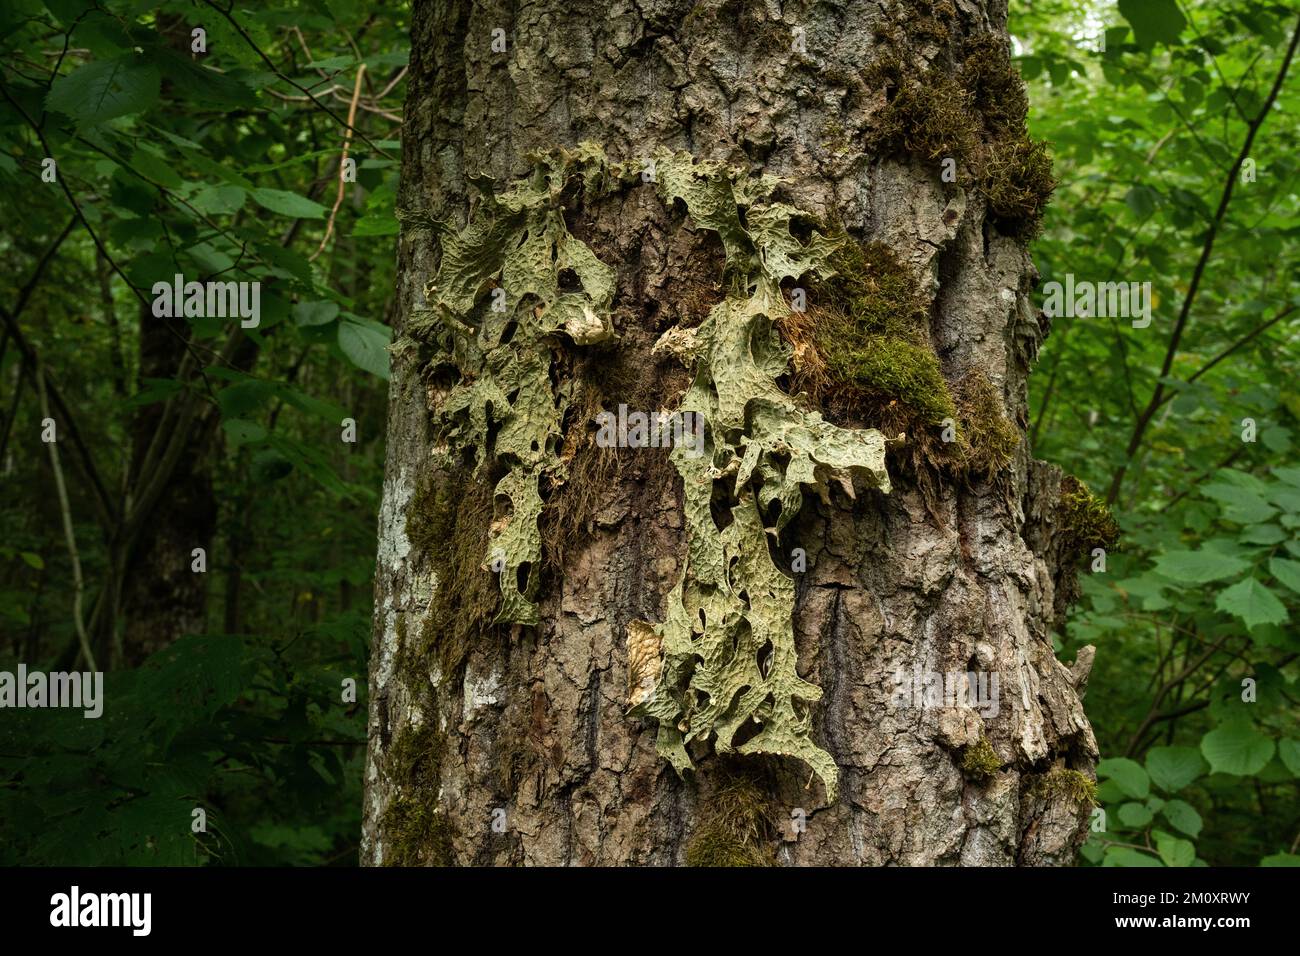 Lungenflechten, Lobaria pulmonaria, die auf einem grossen Eichenstamm im lettischen Wald wächst Stockfoto